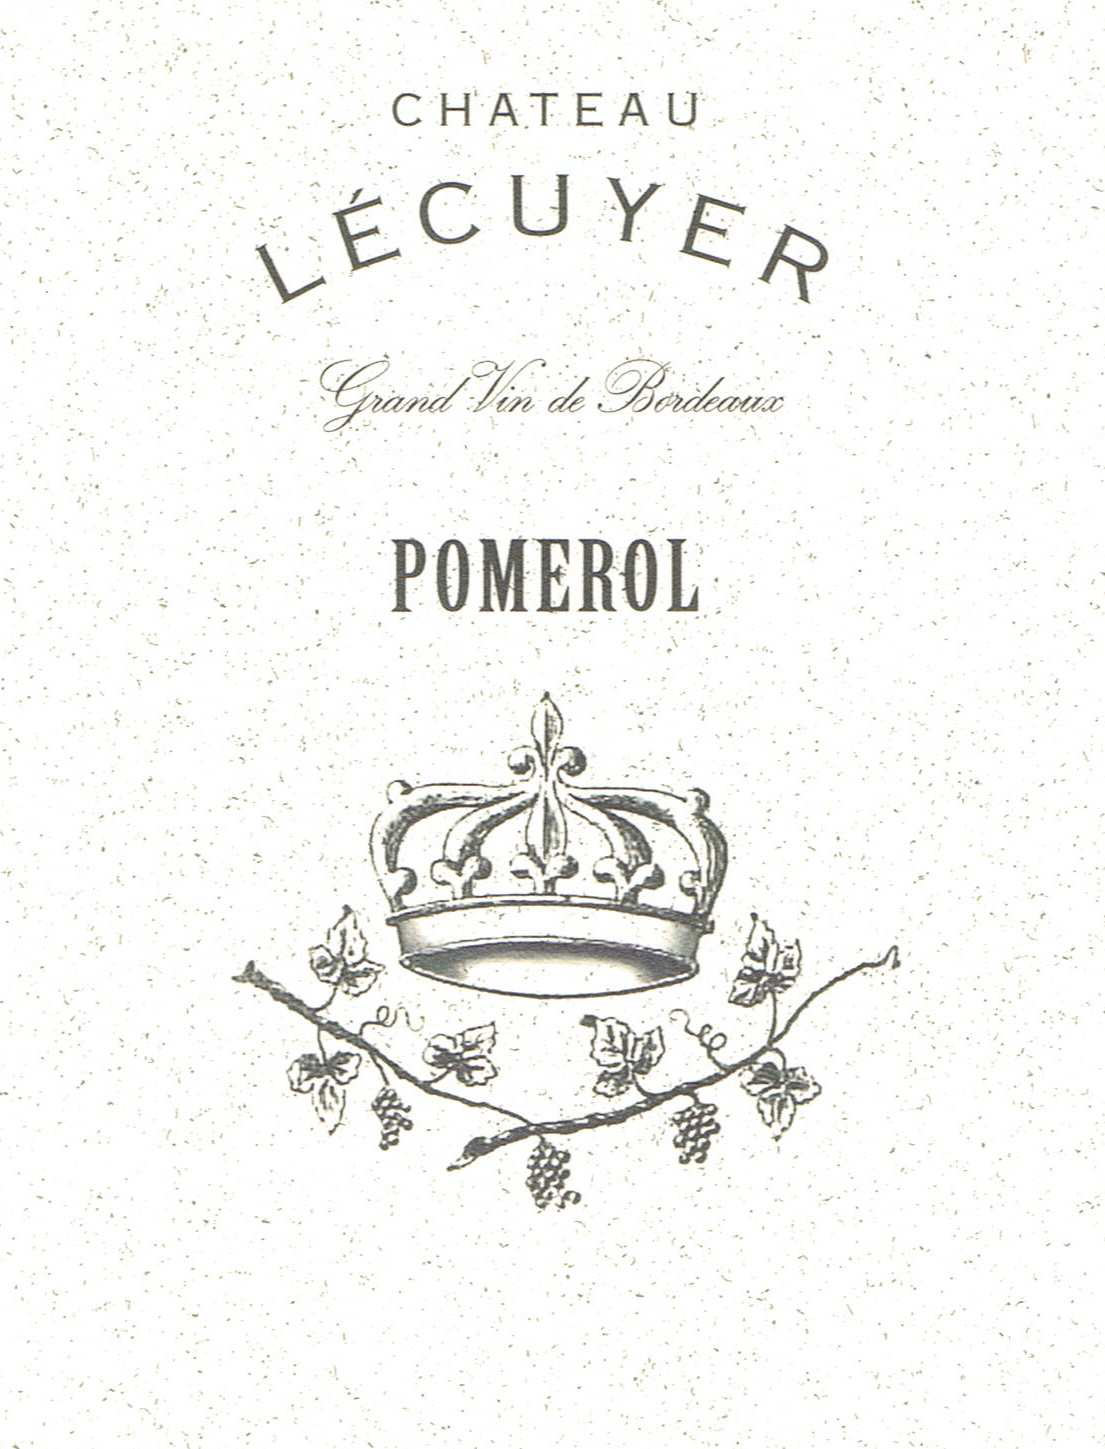 Chateau L'Ecuyer label